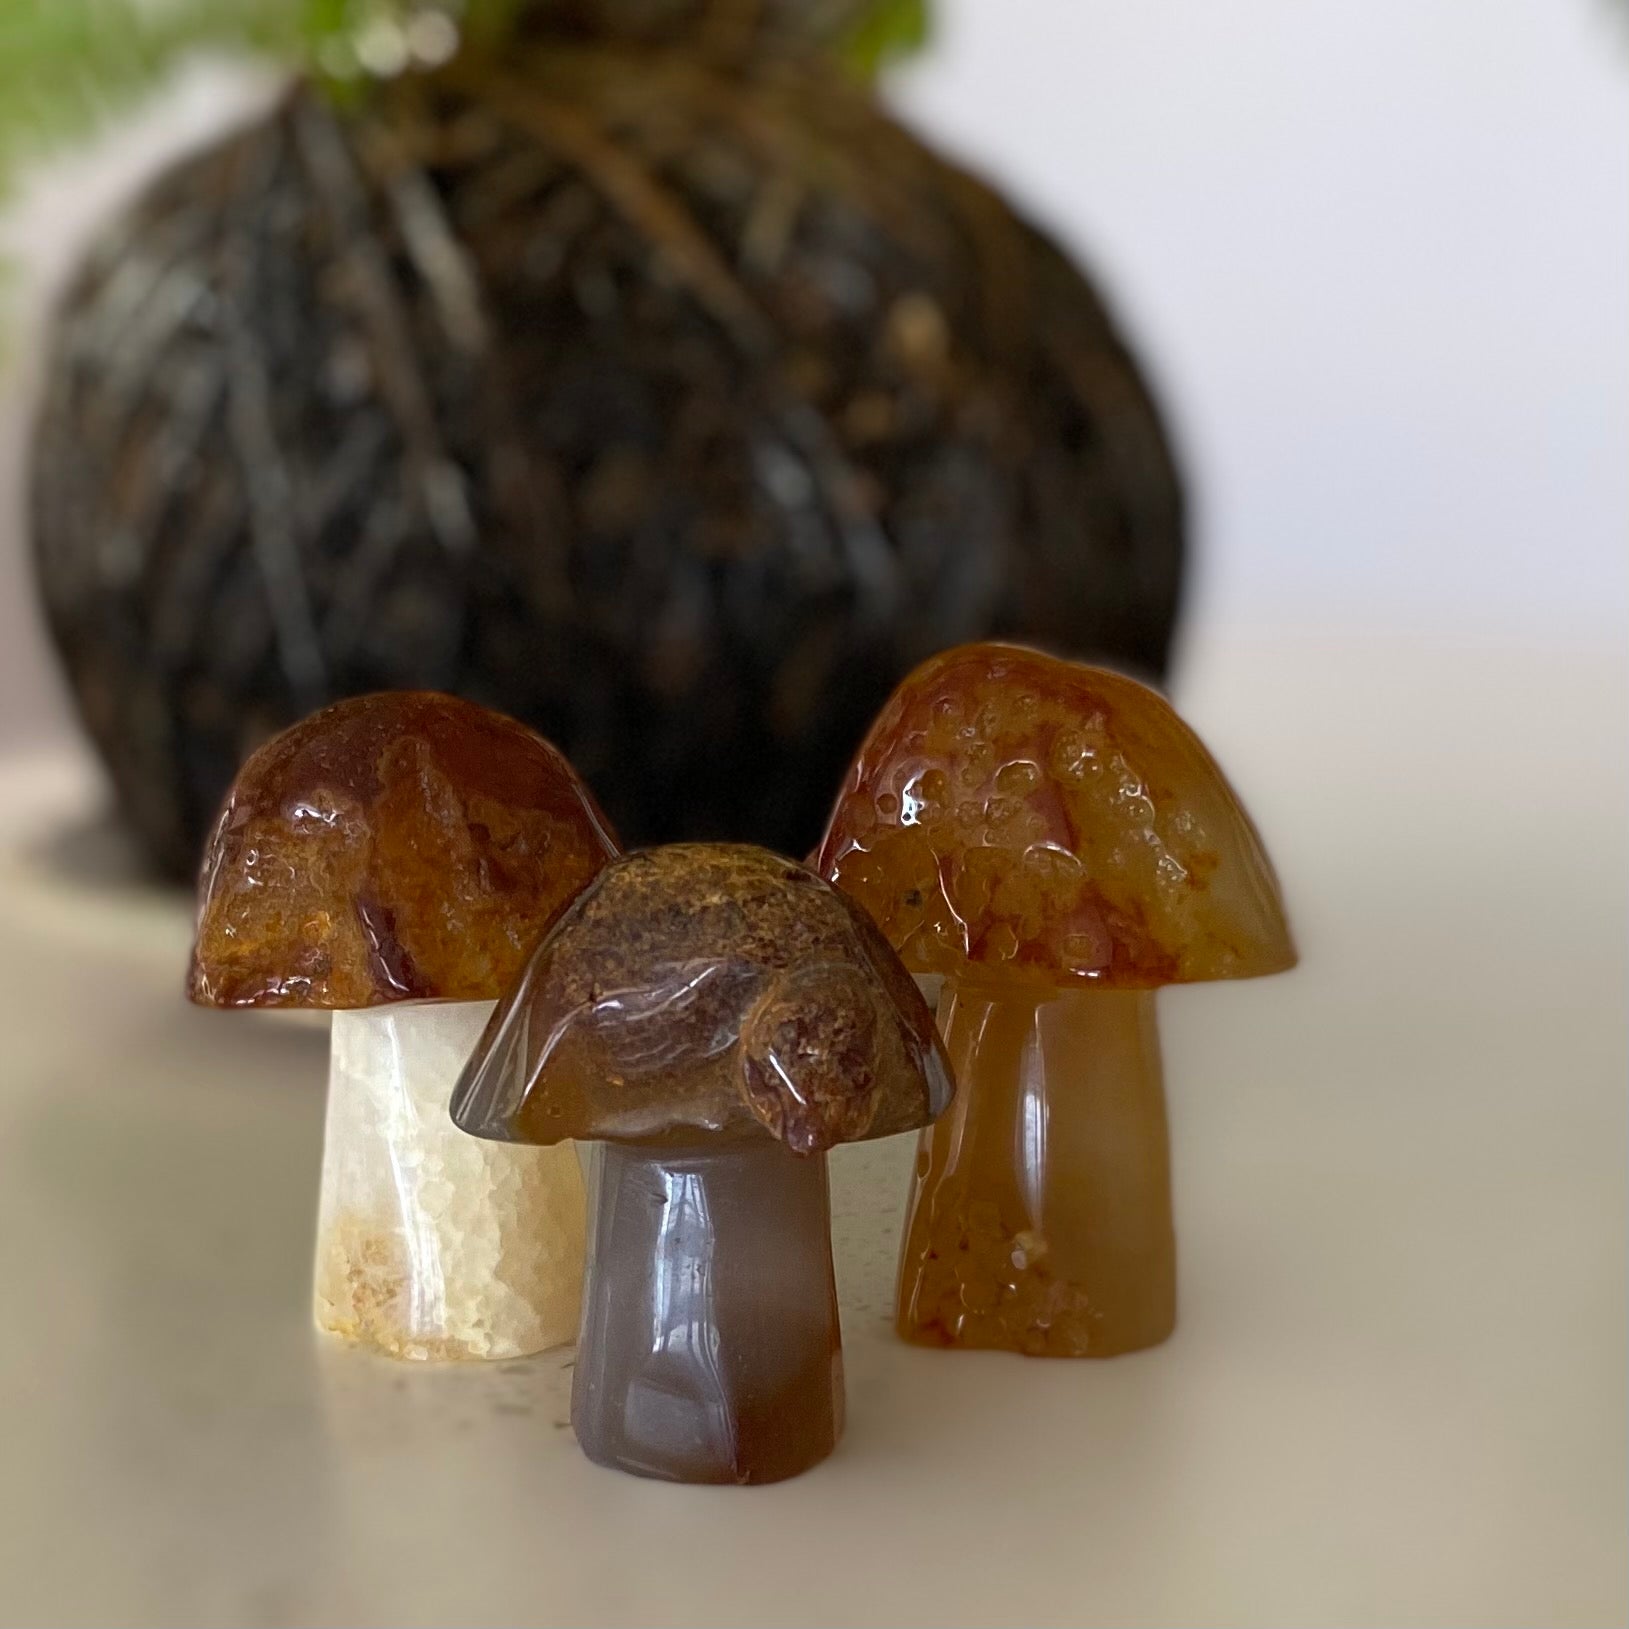 Carnelian mushroom gemstones